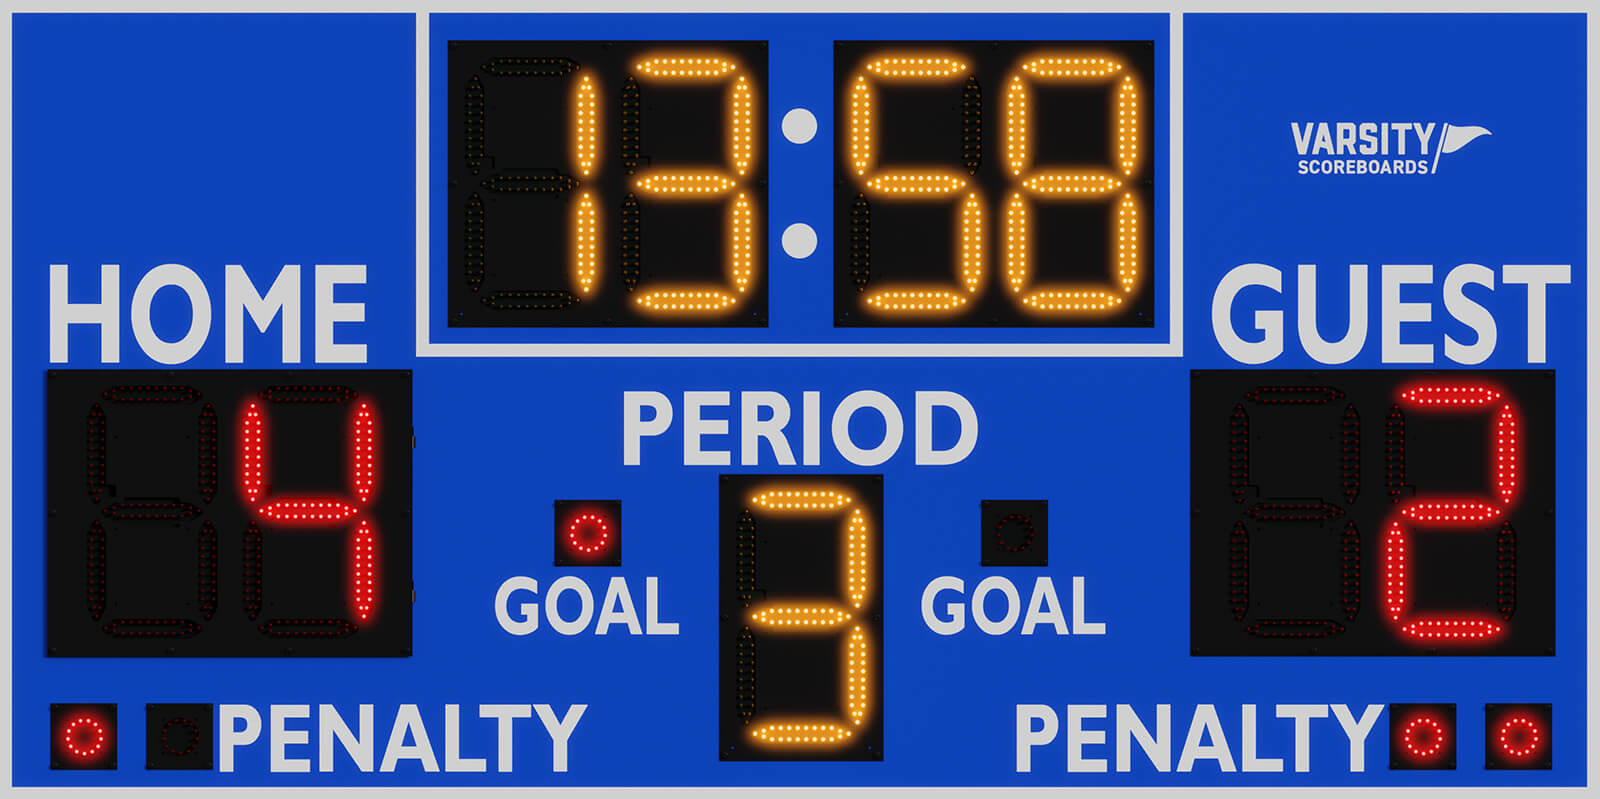 Hockey Scoreboards by Varsity Scoreboards